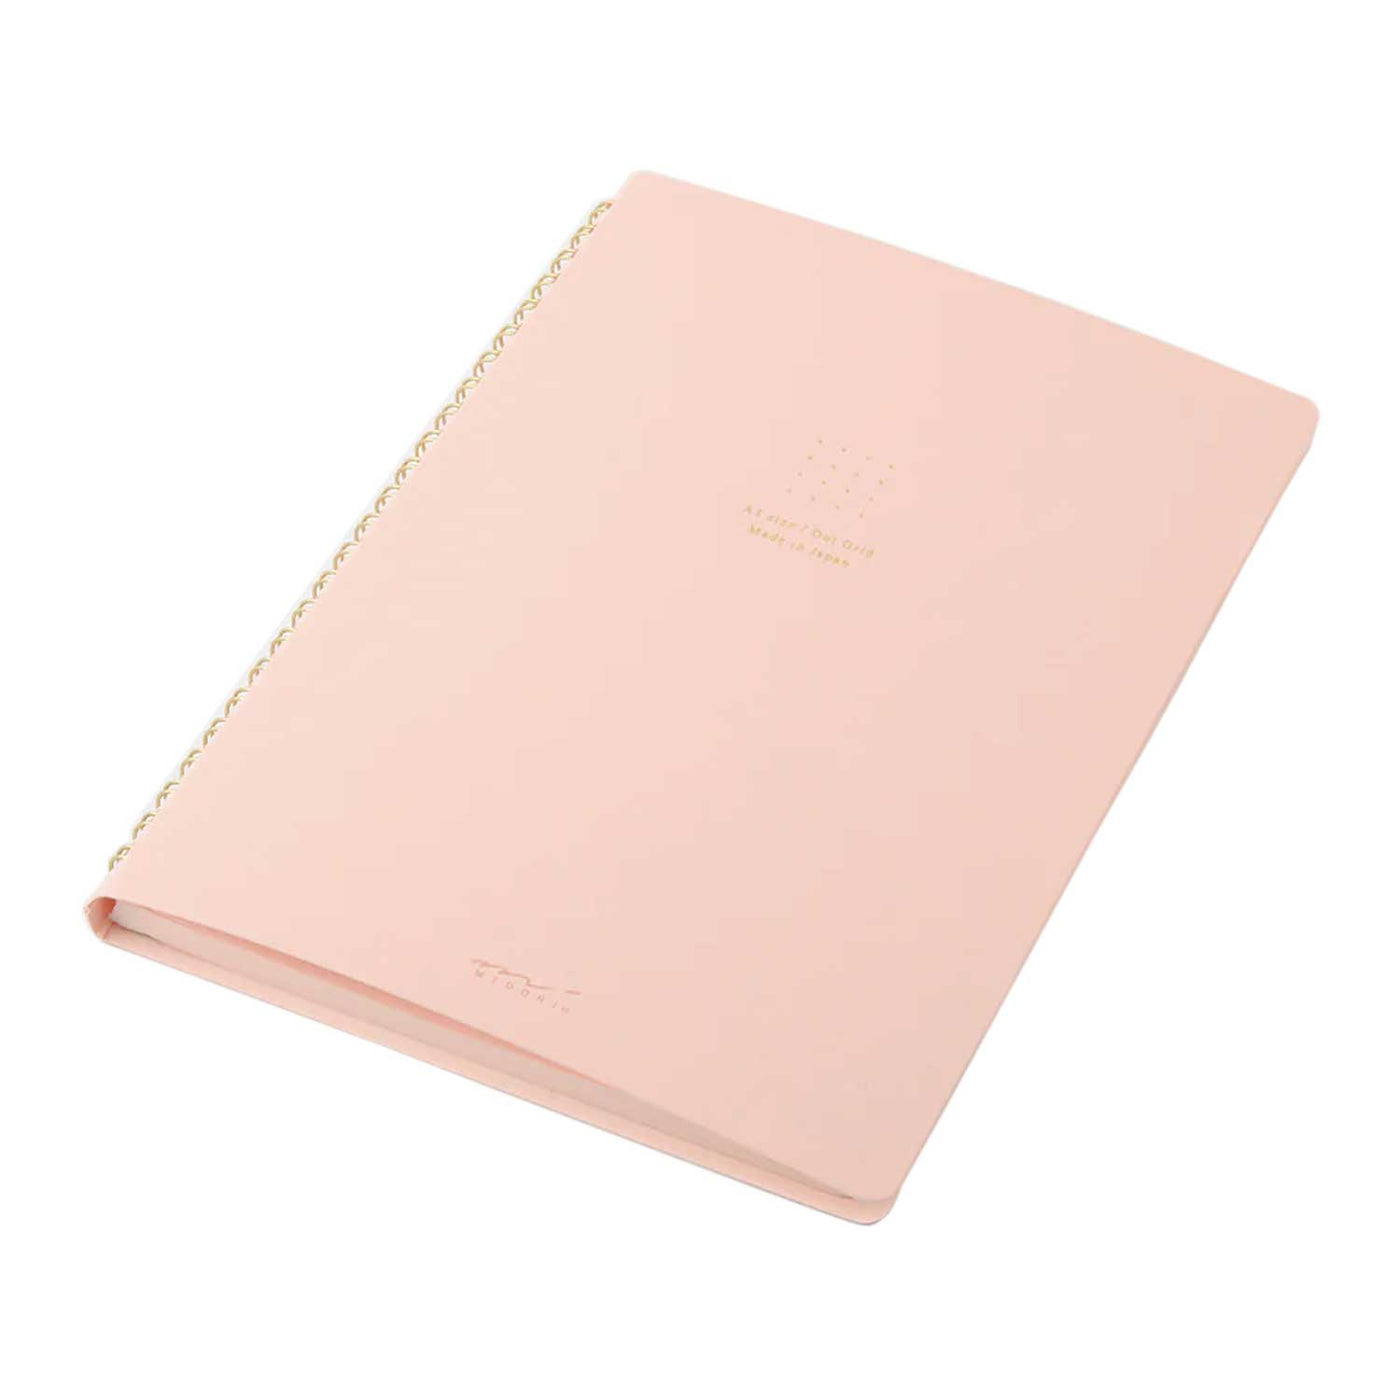 Midori Soft Colour Pink Spiral Notebook - A5 Dotted 2